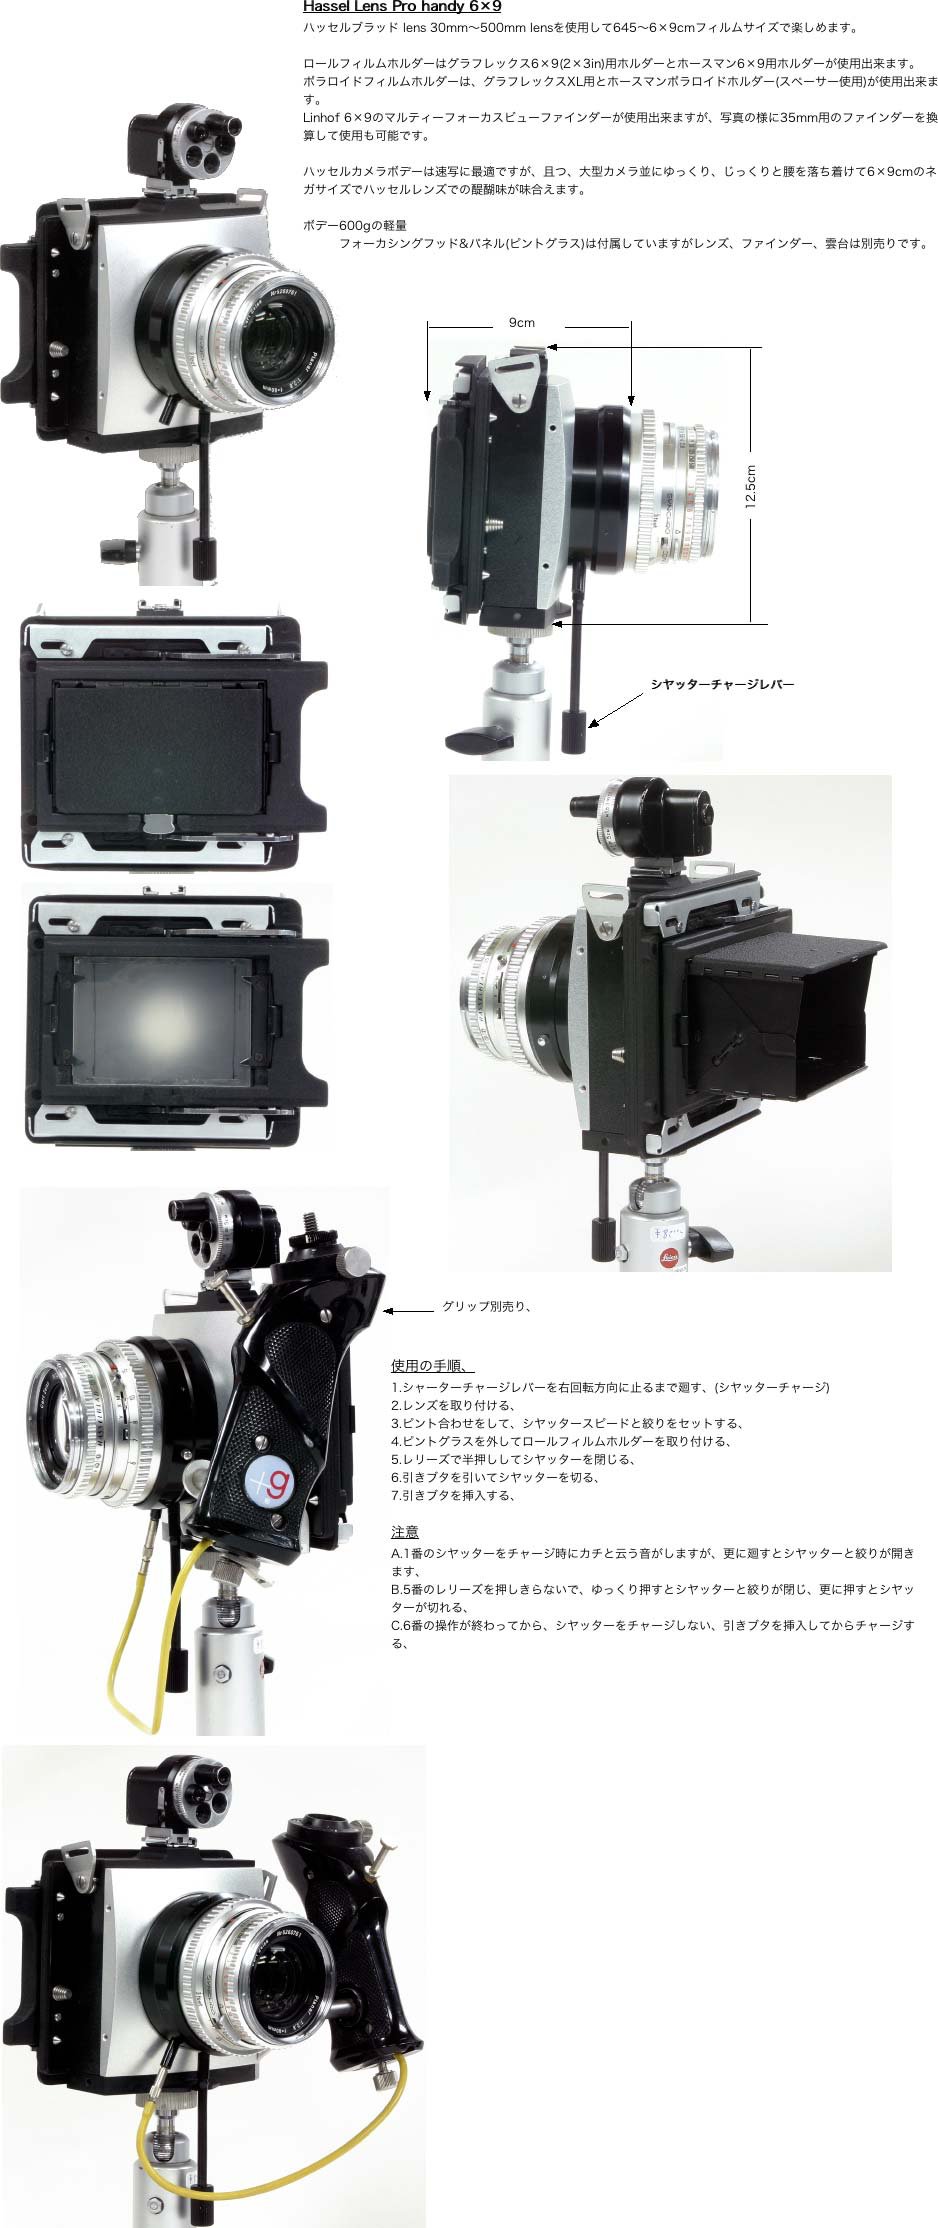 Hassel Lens Pro Handay 6×9 ハッセルブラッドのレンズを使用して645～6×9のフオーマットで撮影画像